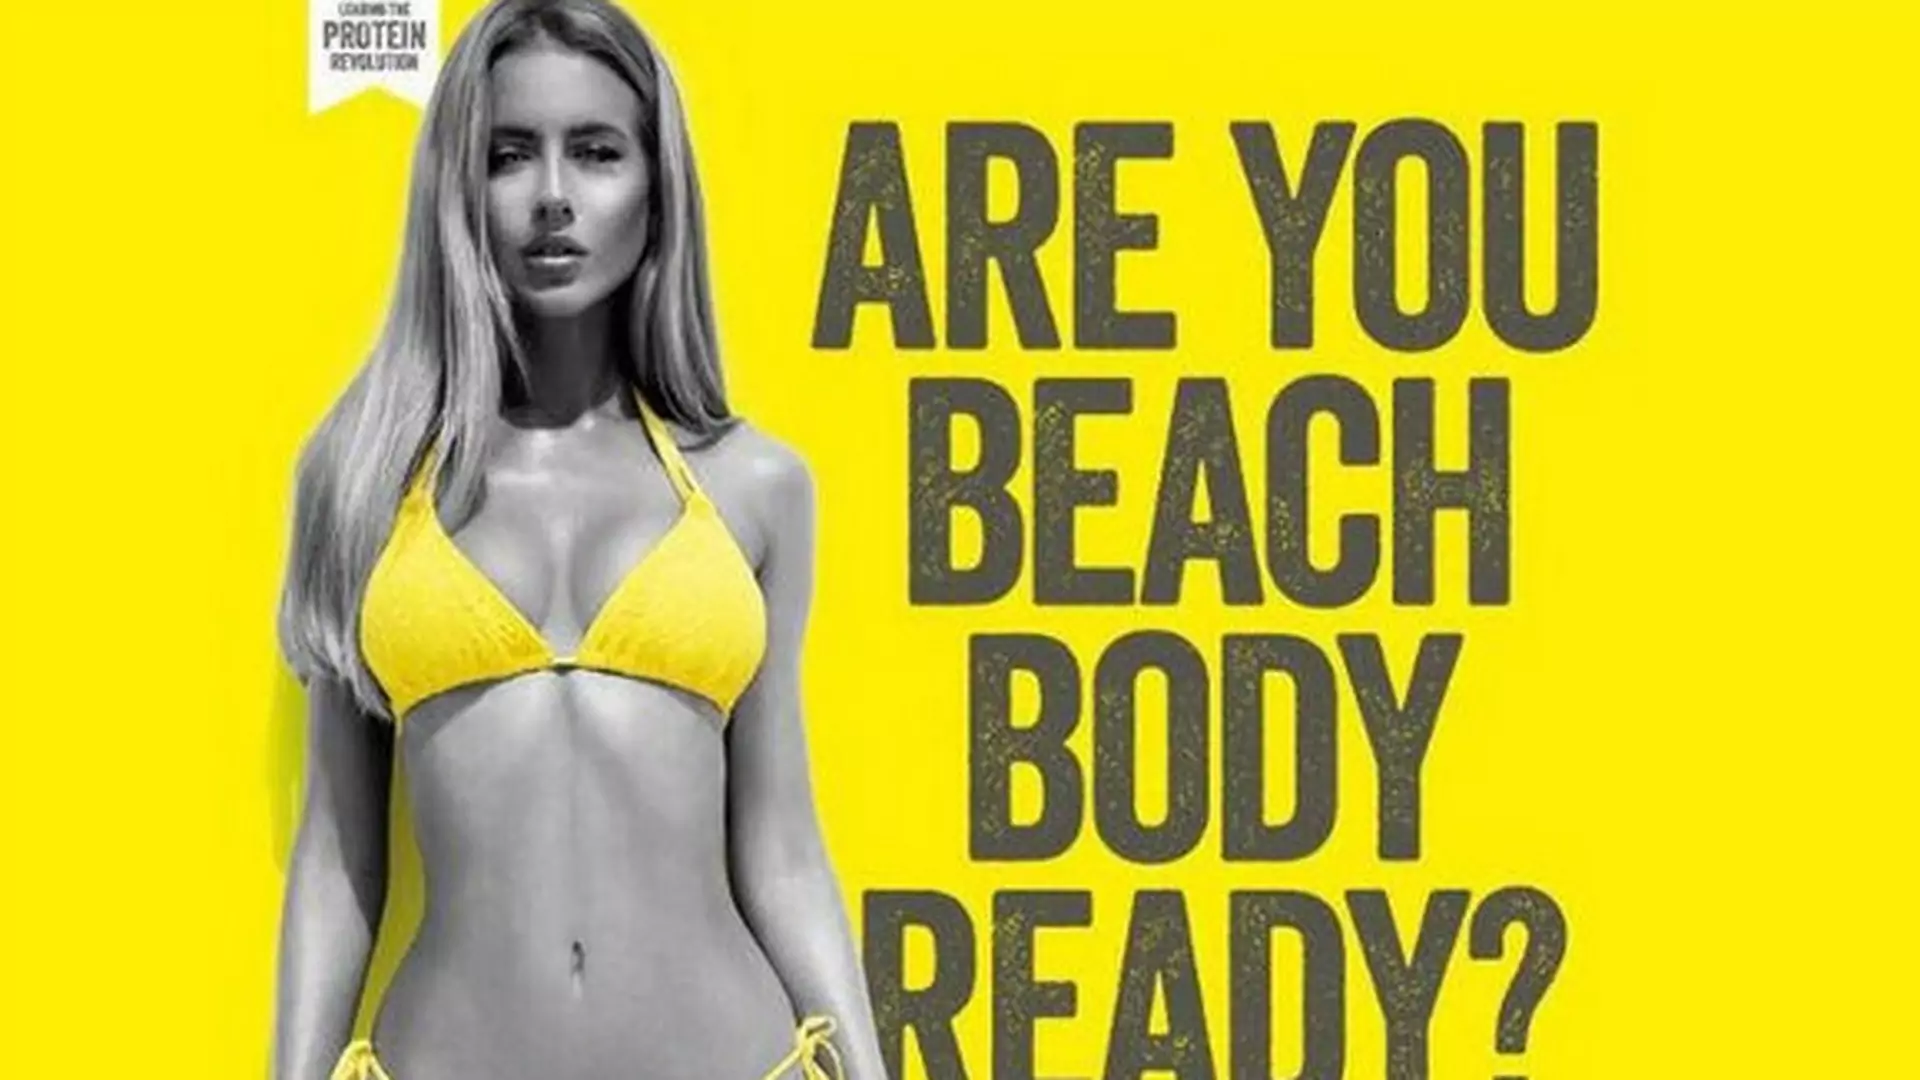 Reklama, która wywołała burzę w brytyjskich mediach społecznościowych